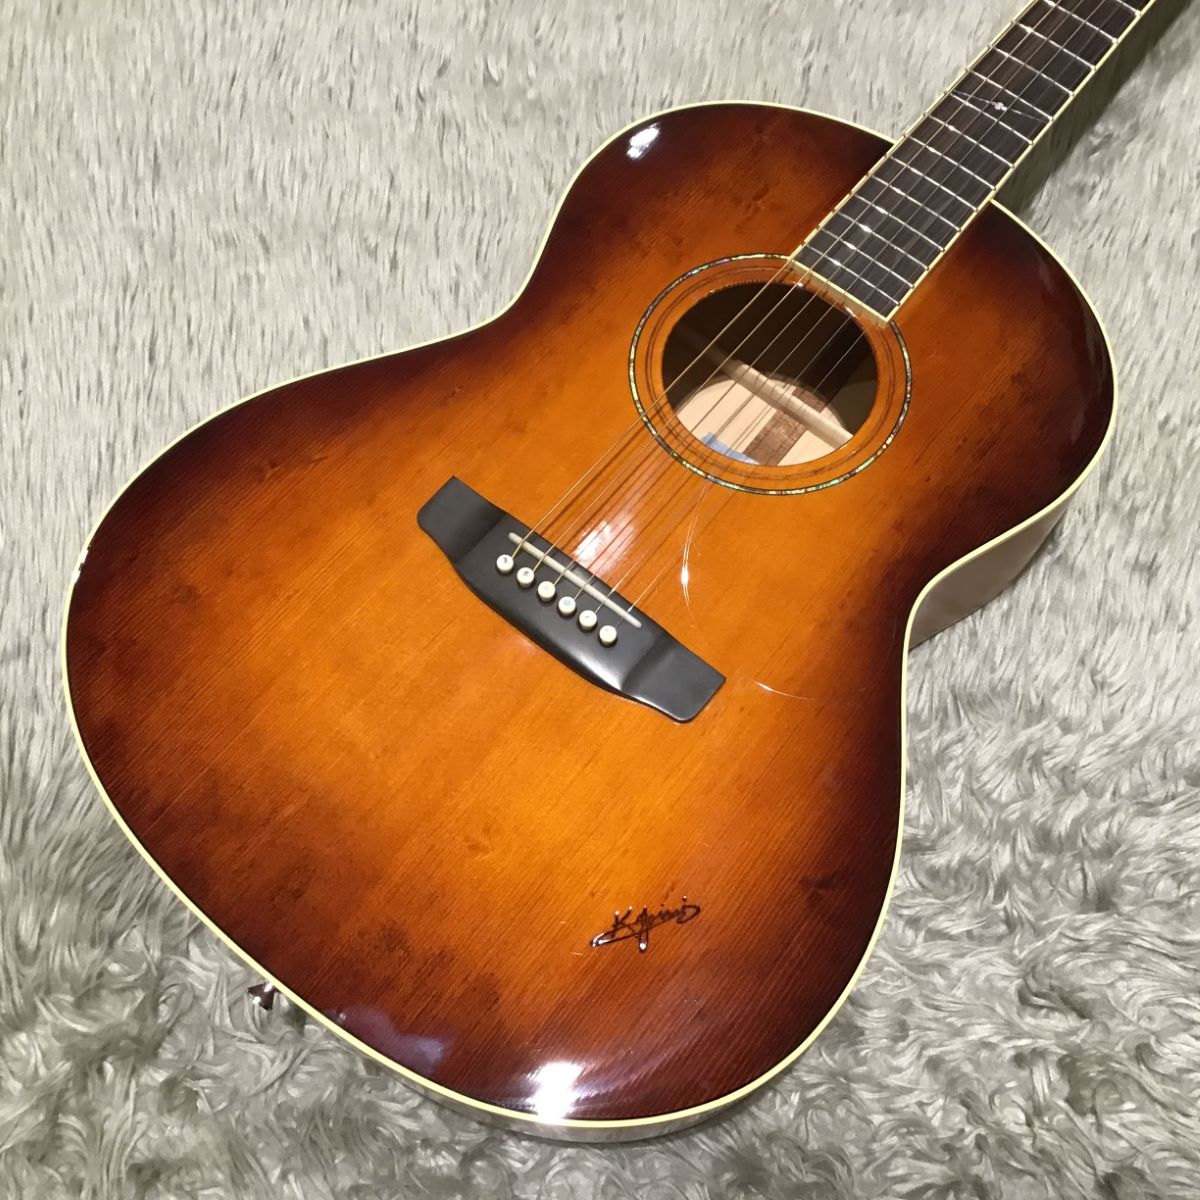 K YAIRIのアコースティックギターSO-MH1　美品です。宜しくお願いいたします